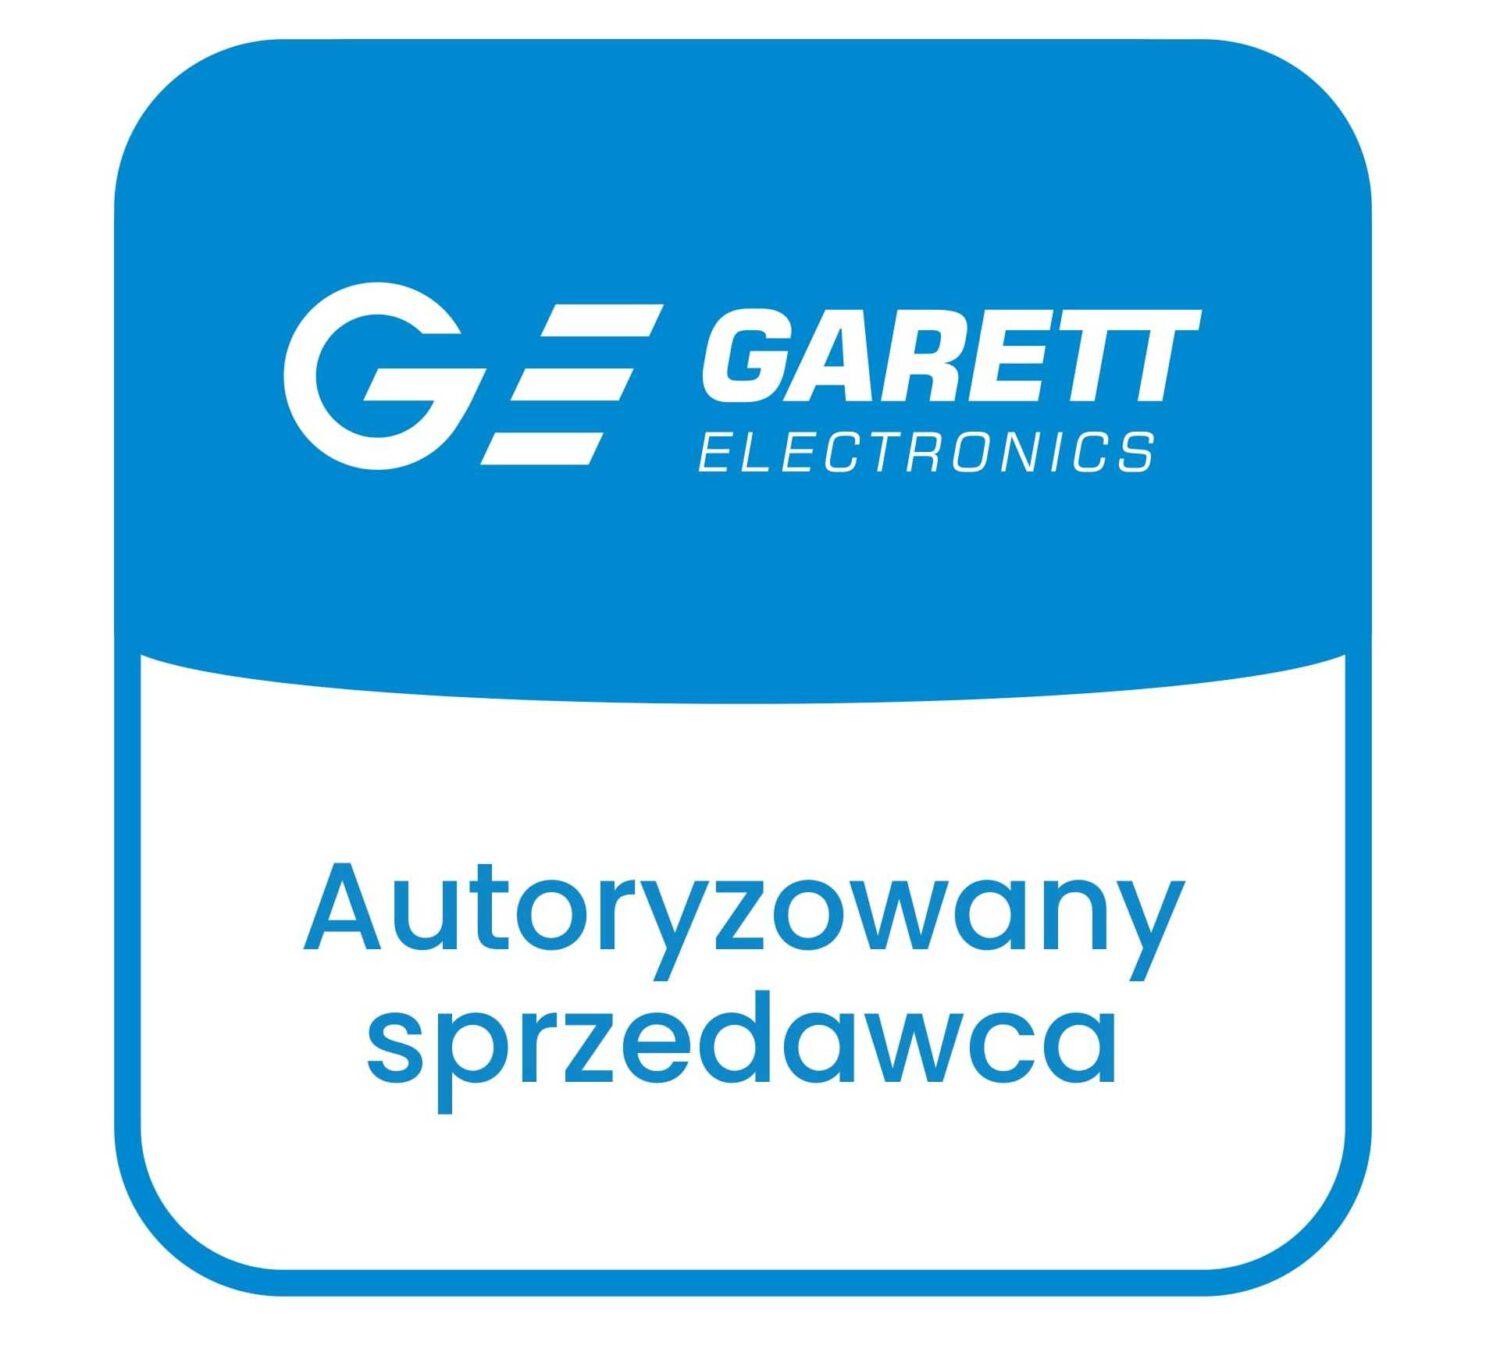 Zegarek męski Smartwatch Garett GT22S Rt Czarny, Stalowy